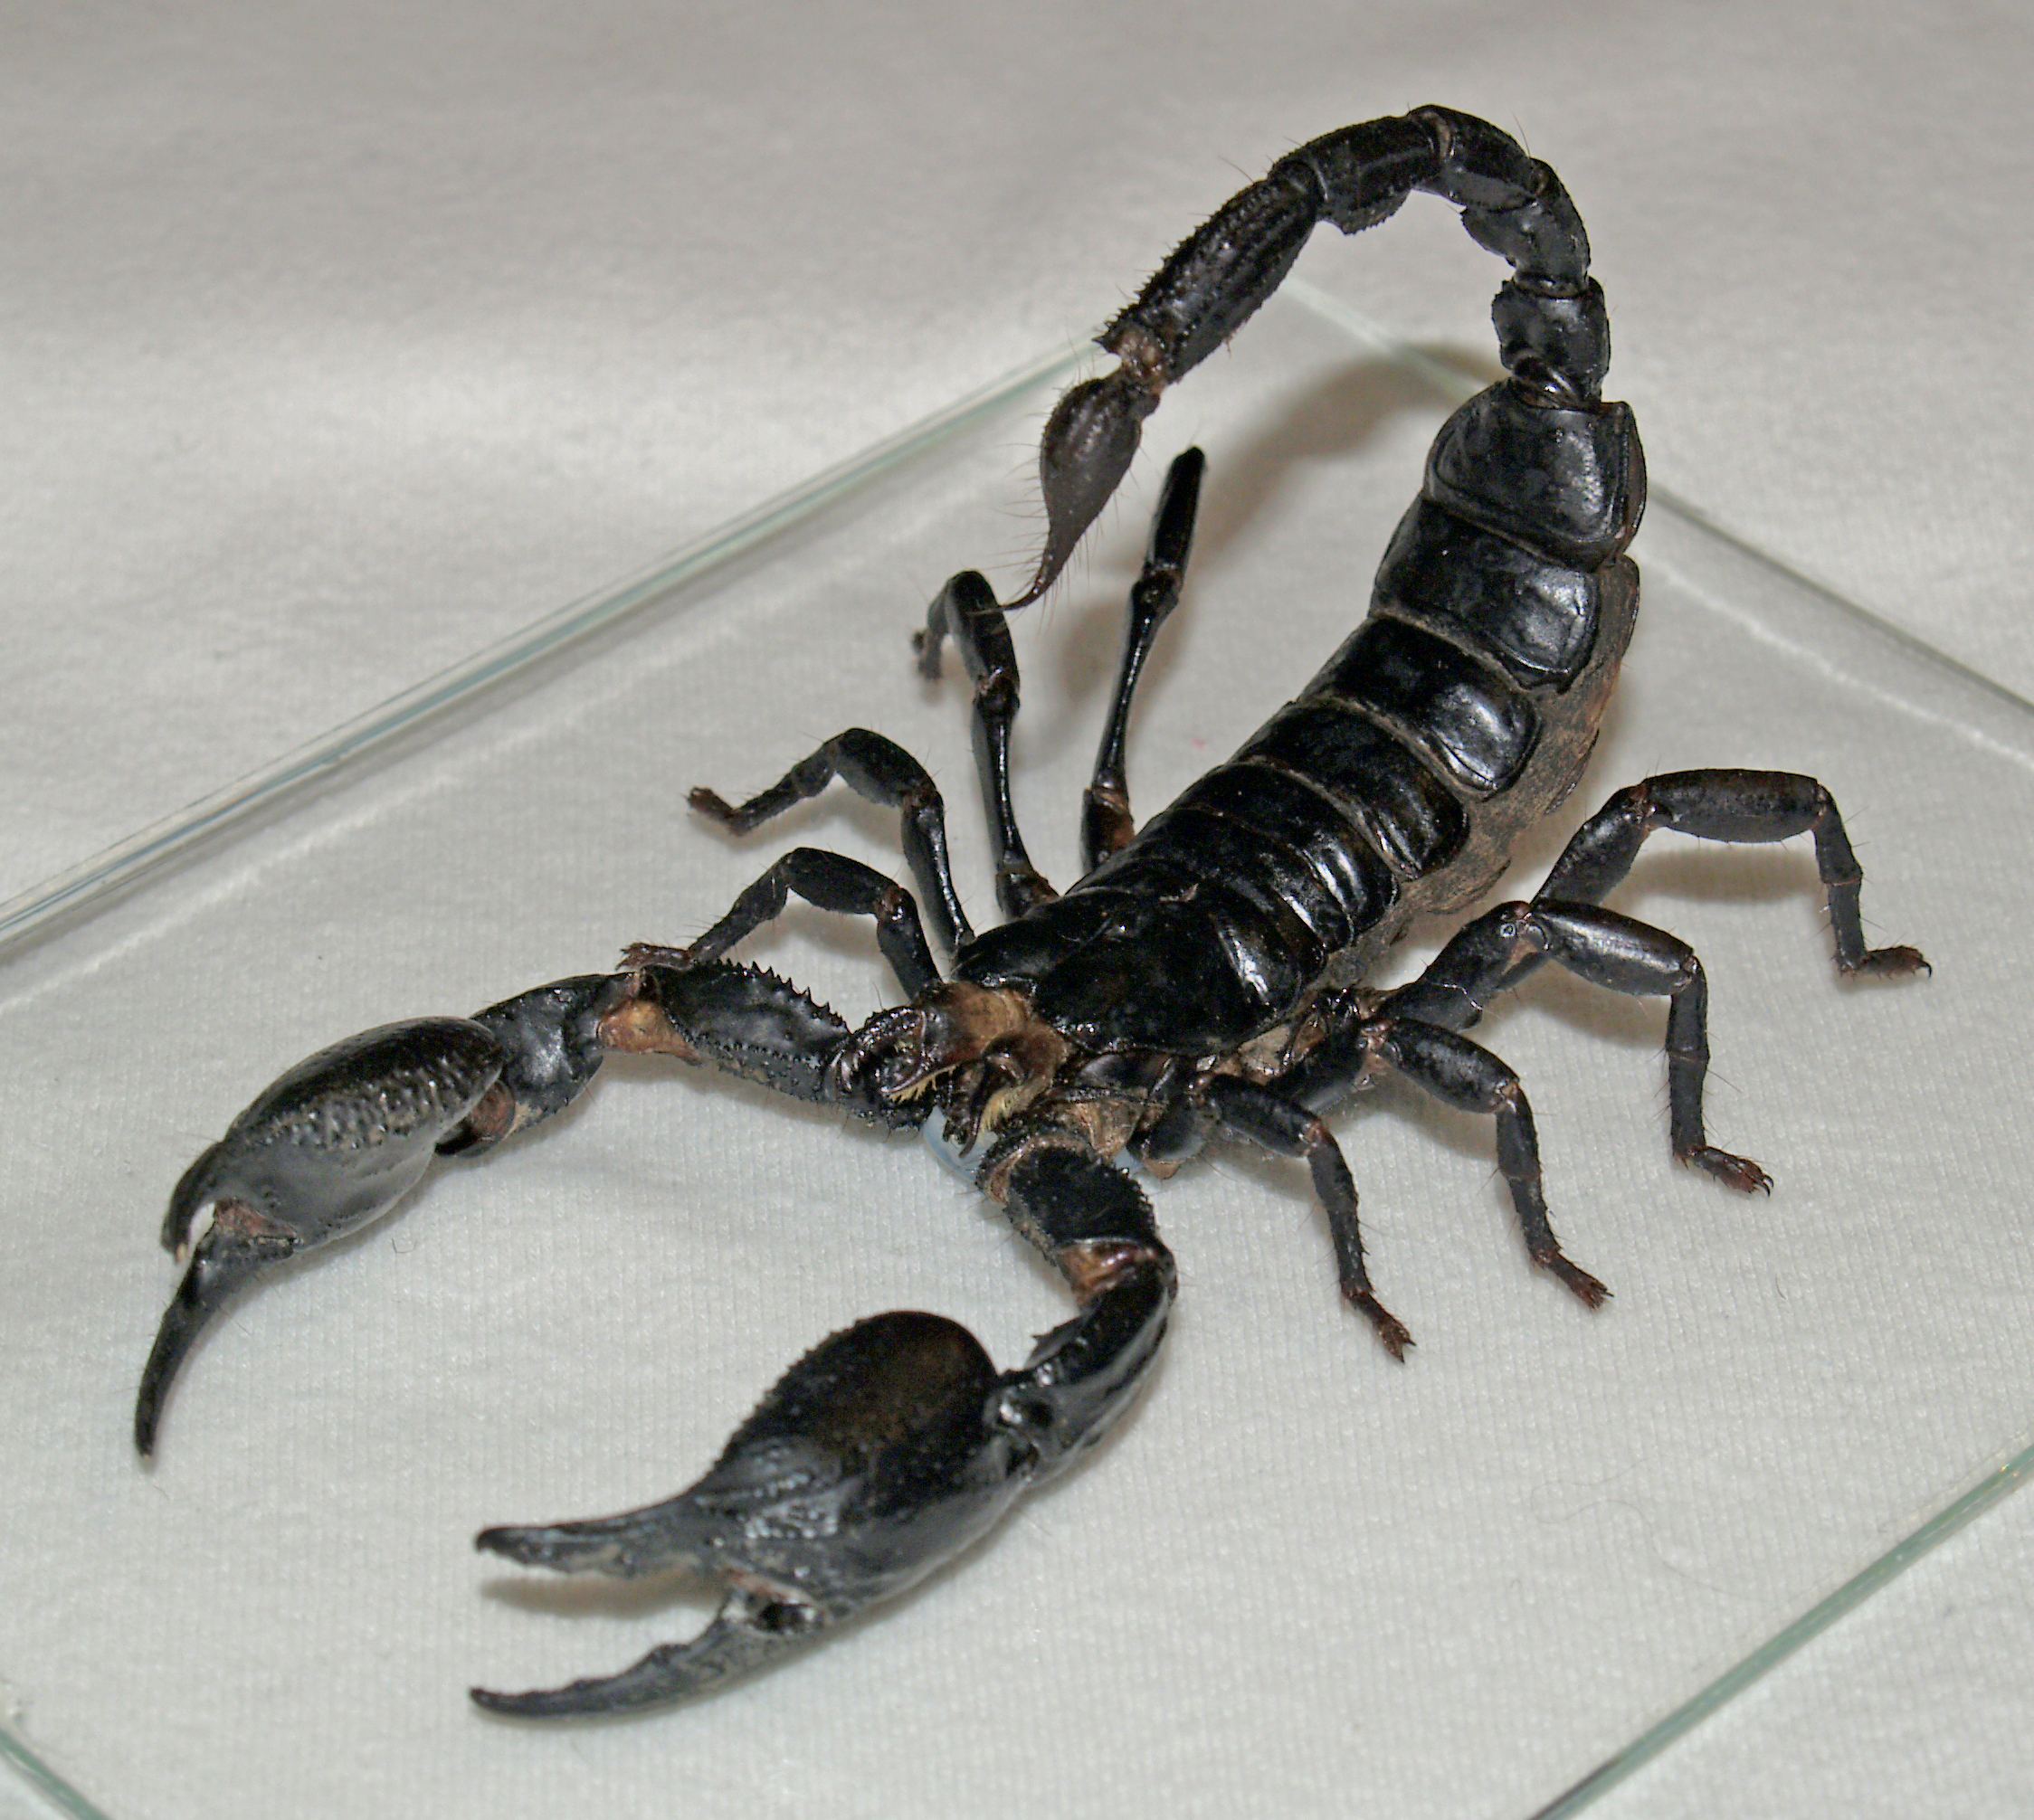 animals, scorpions - desktop wallpaper